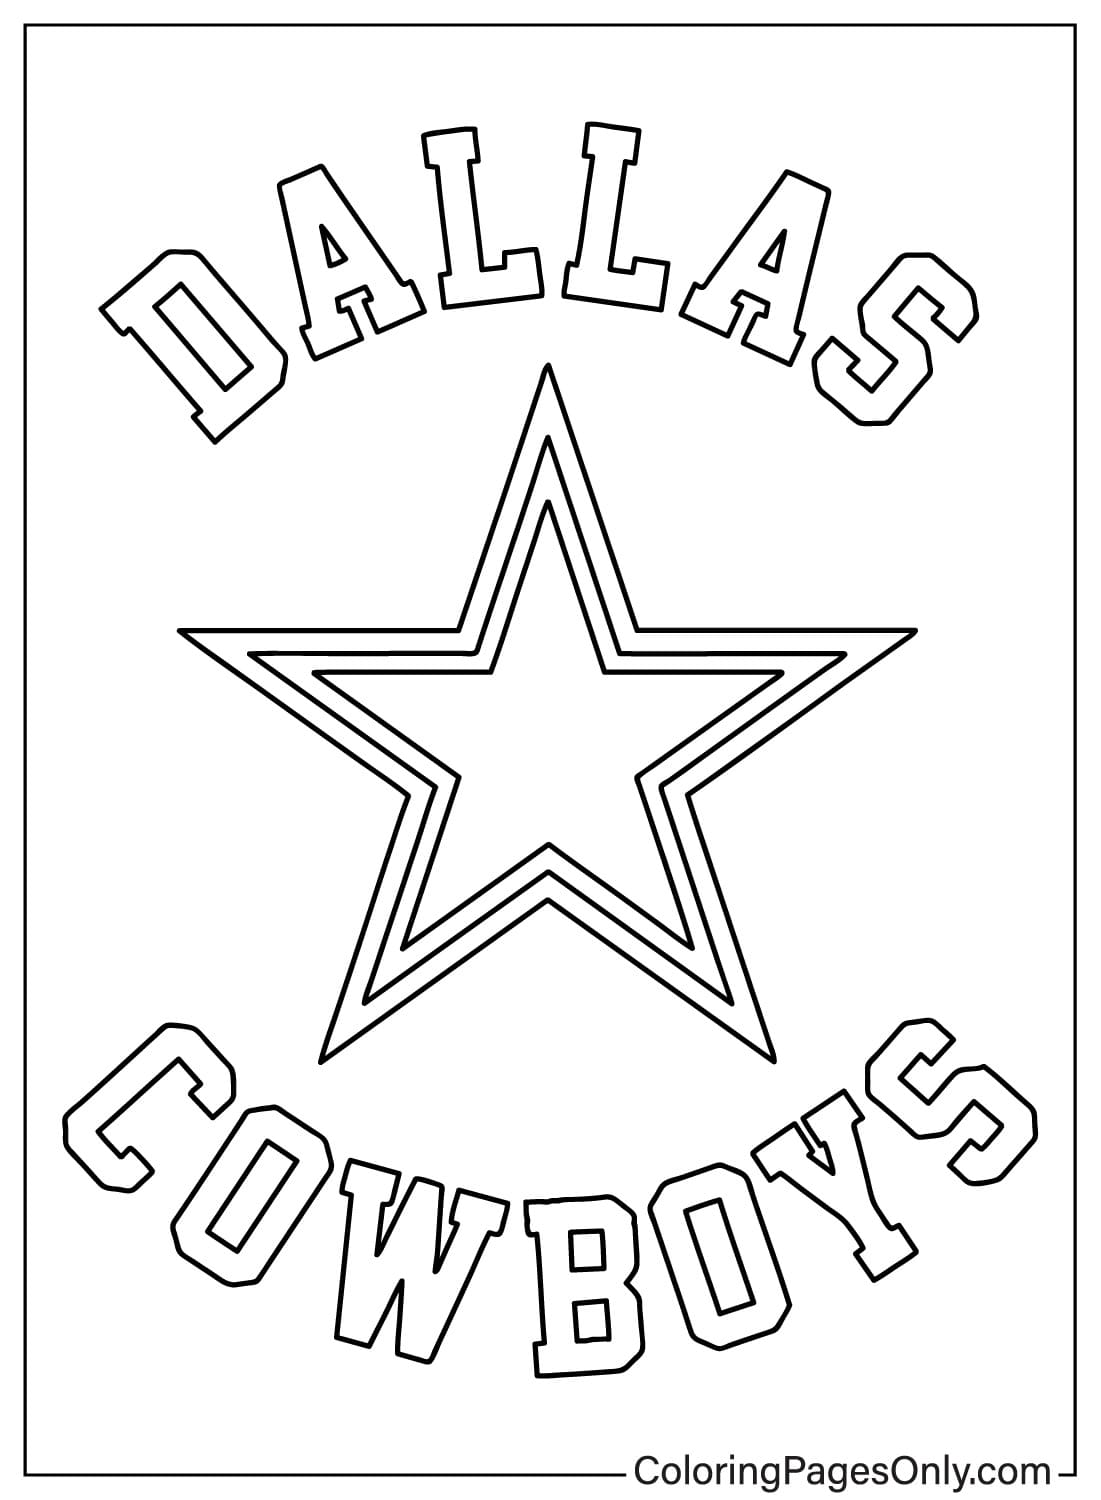 Página para colorear de los Dallas Cowboys de los Dallas Cowboys